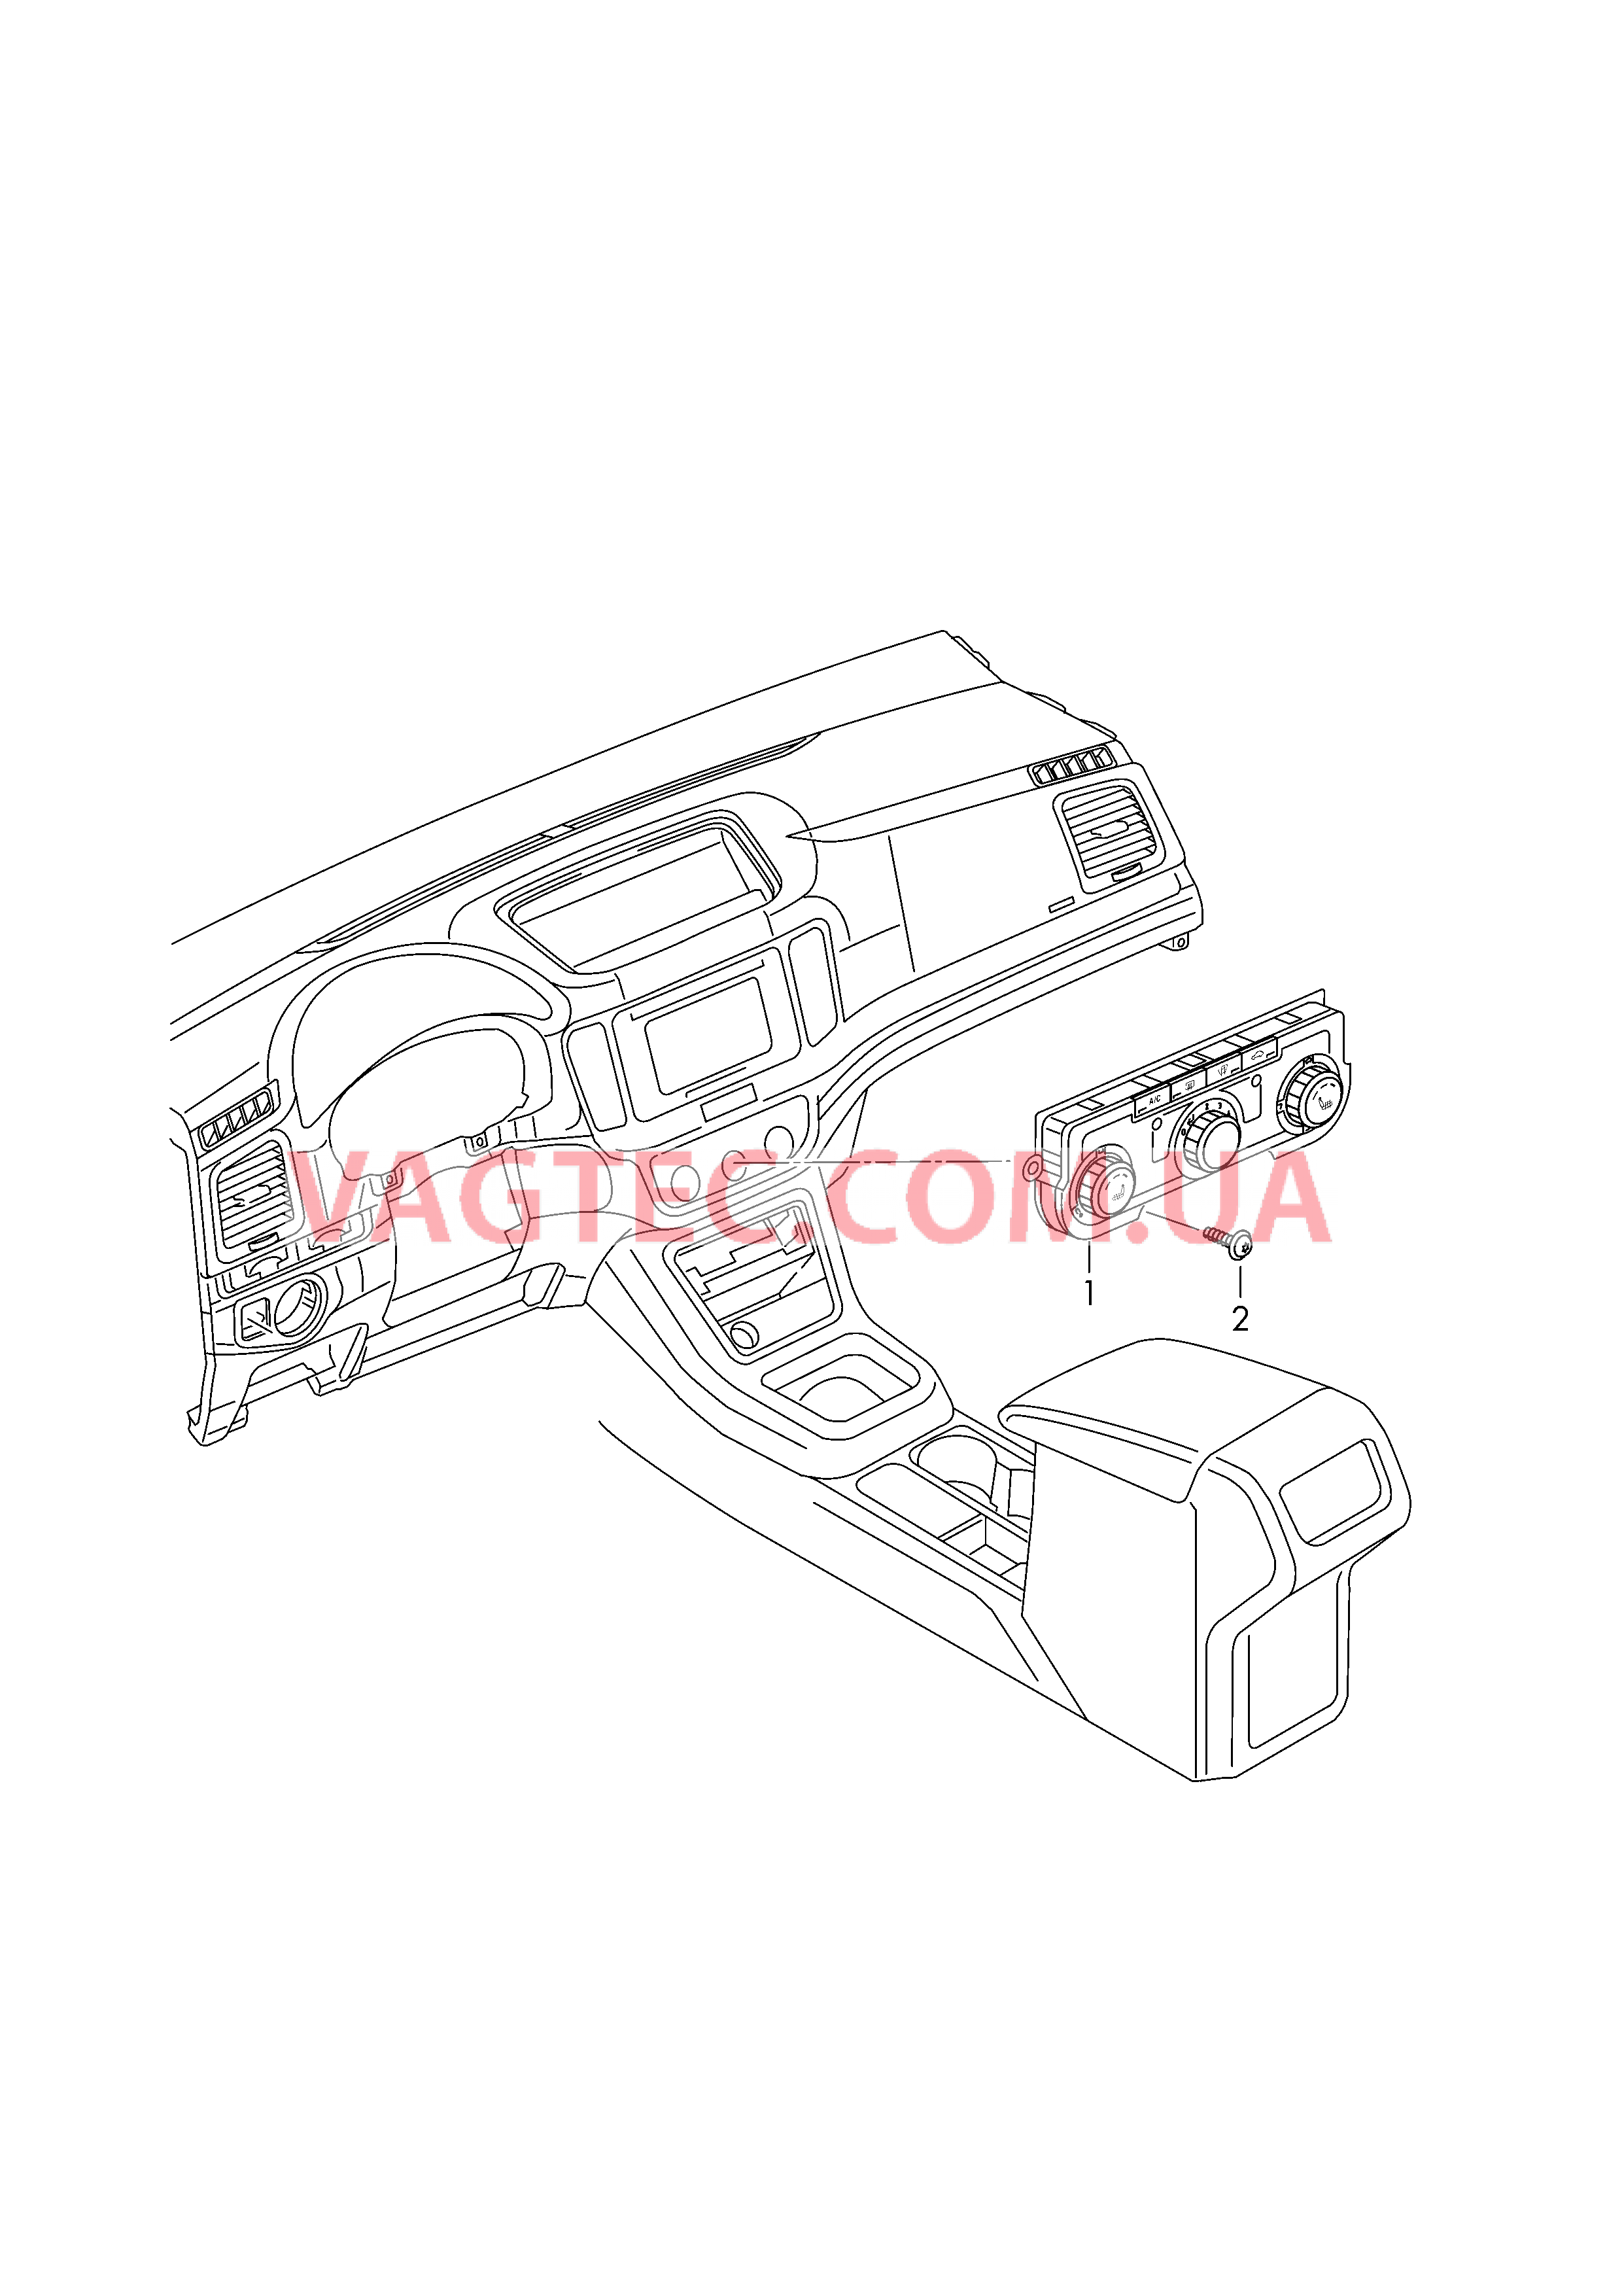 БУ климатической установки Панель управления и индикации БУ климатической установки с ручным управлением  для SEAT Alhambra 2016